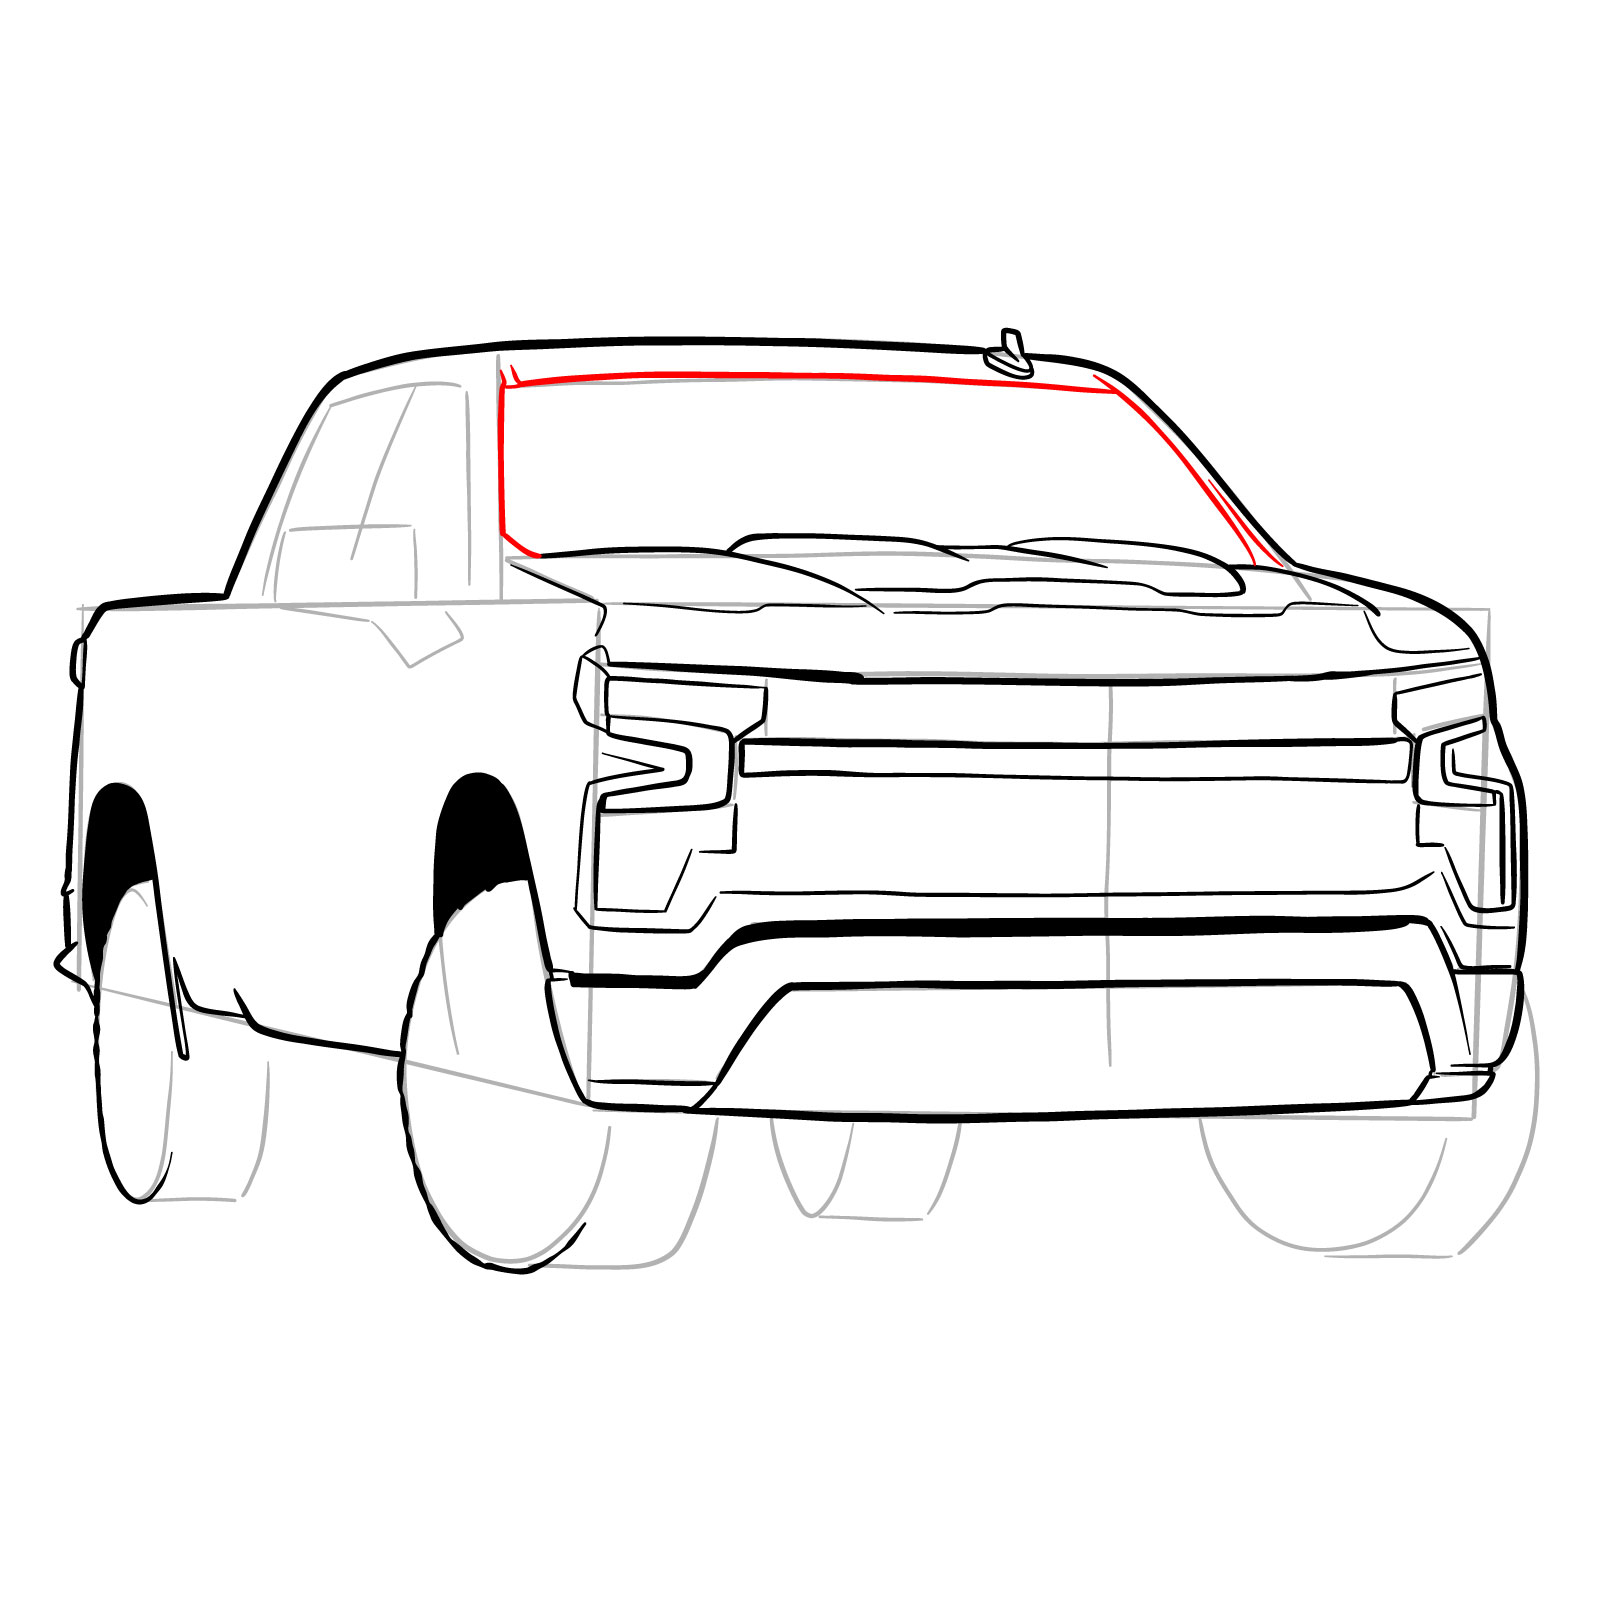 How to draw a 2022 Chevy Silverado - step 21